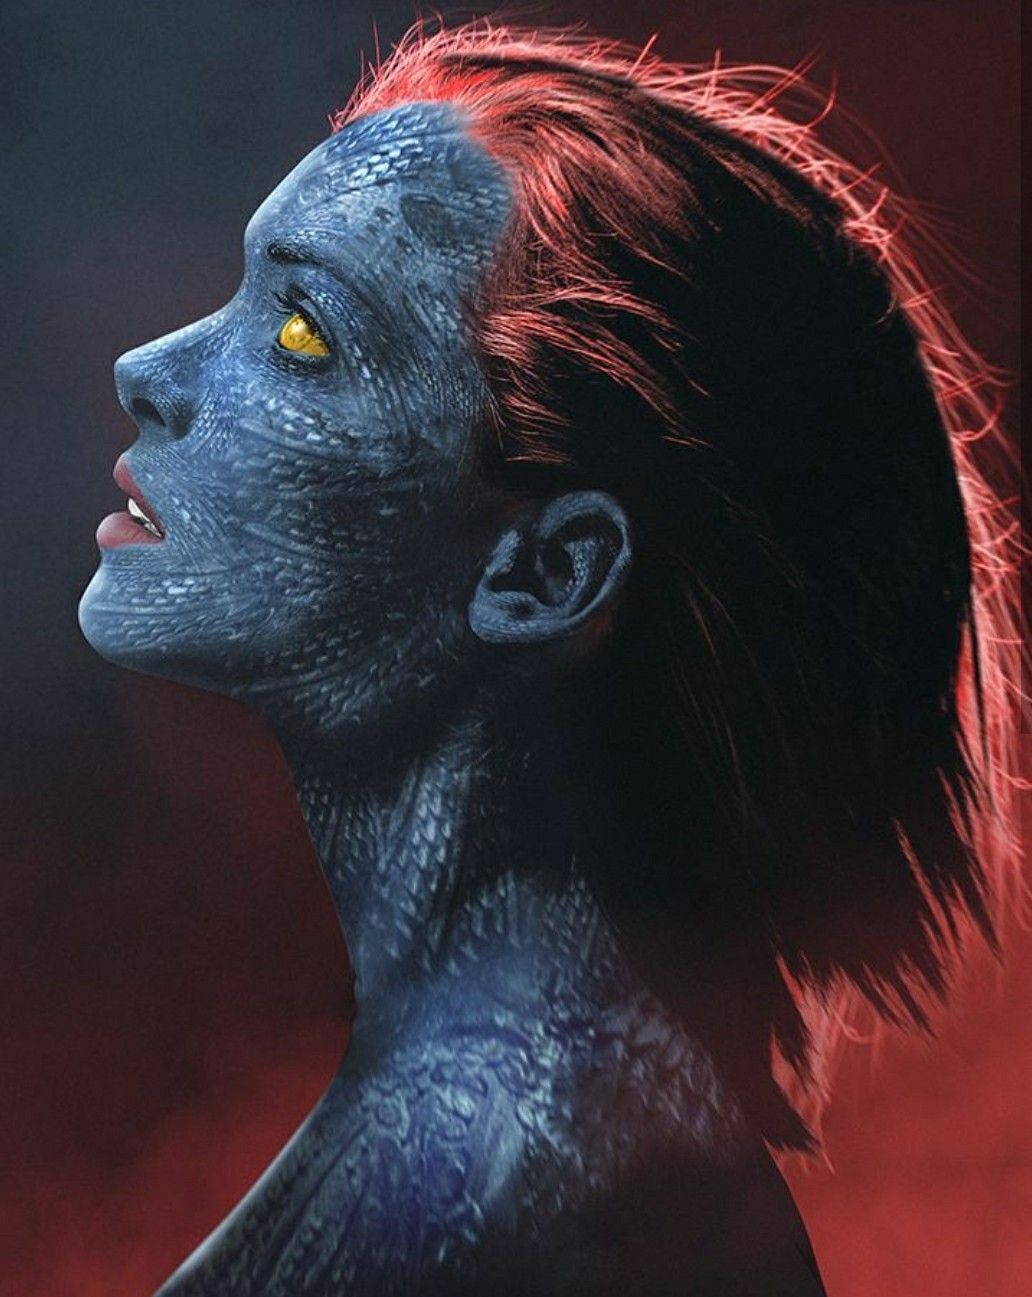 Winona Ryder as Mystique